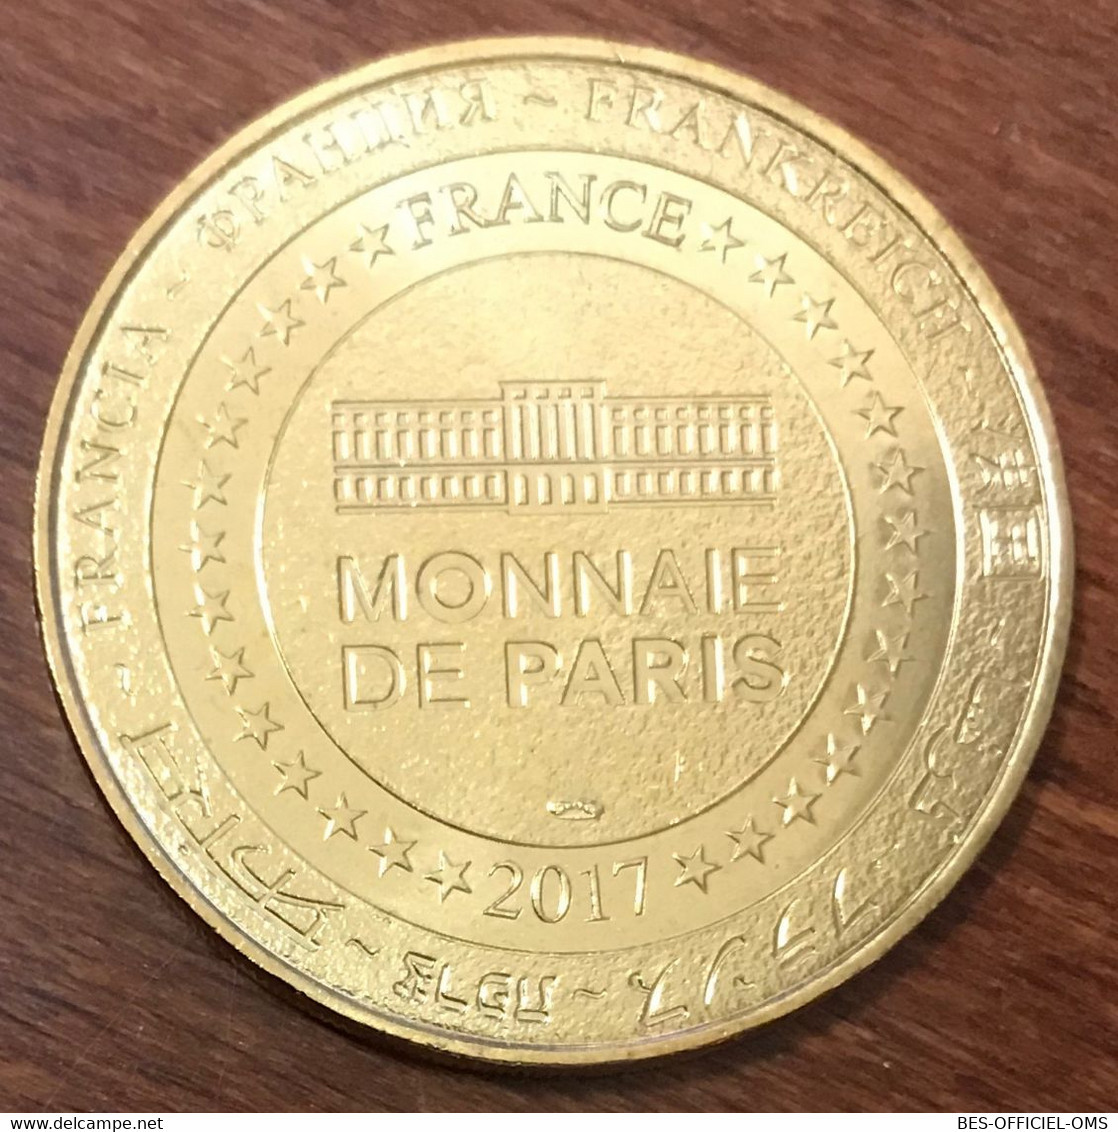 17 L'ÎLE D'AIX FORT BOYARD MDP 2017 MEDAILLE MONNAIE DE PARIS JETON TOURISTIQUE MEDALS COINS TOKENS - 2017